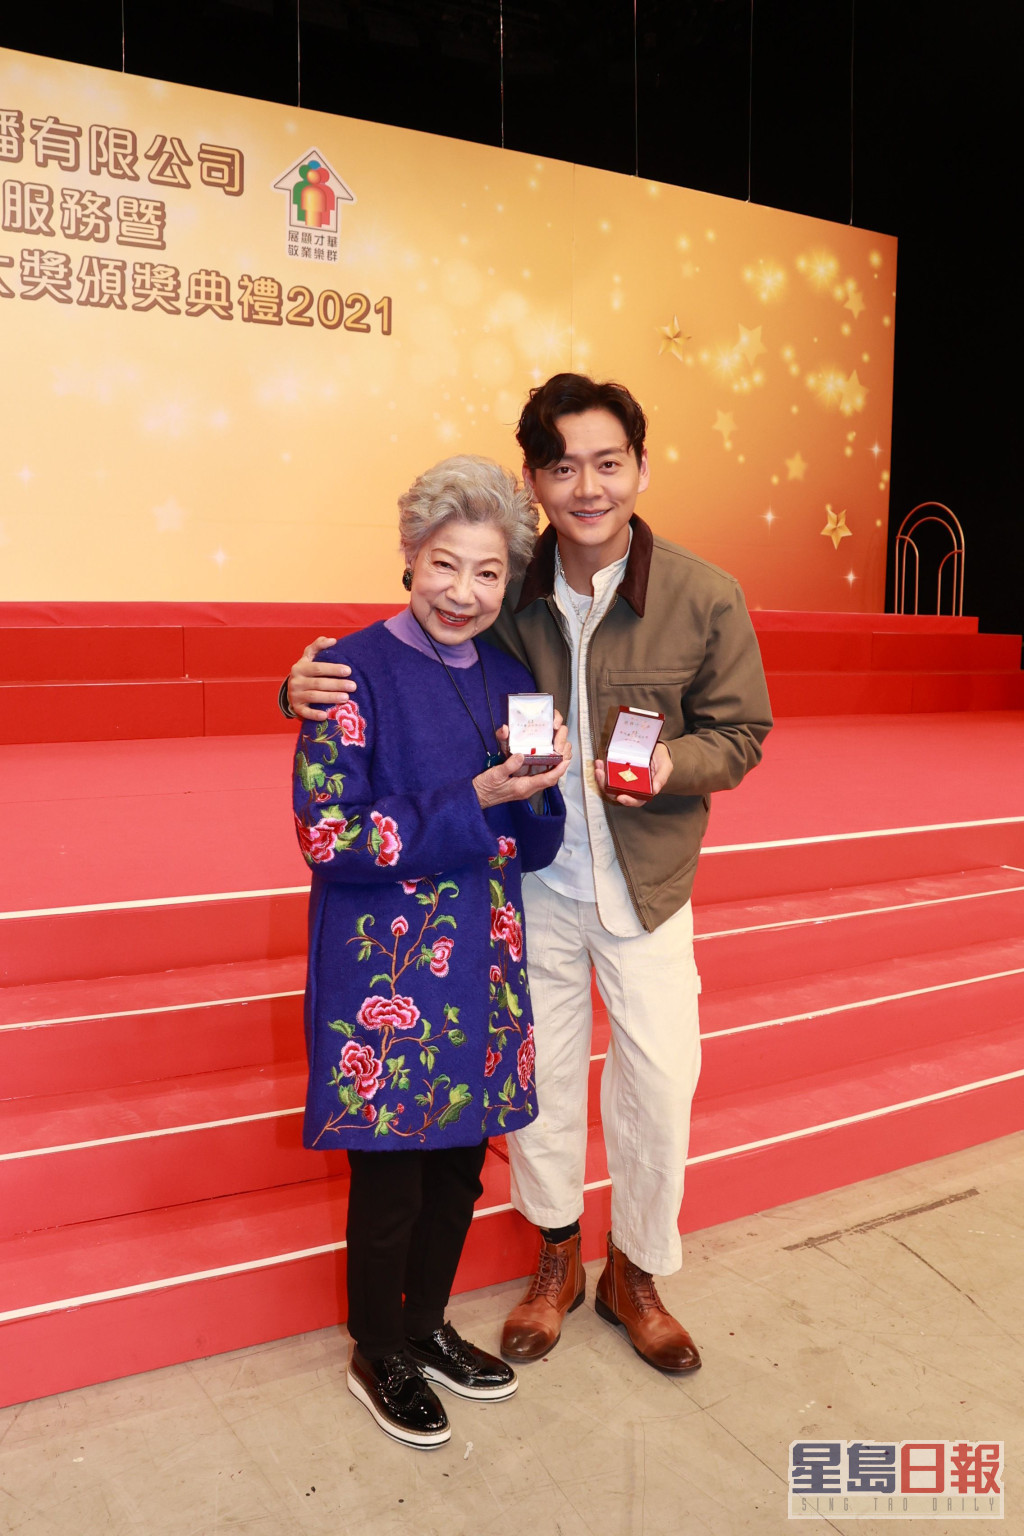 羅蘭早前與張振朗領取TVB長期服務獎。